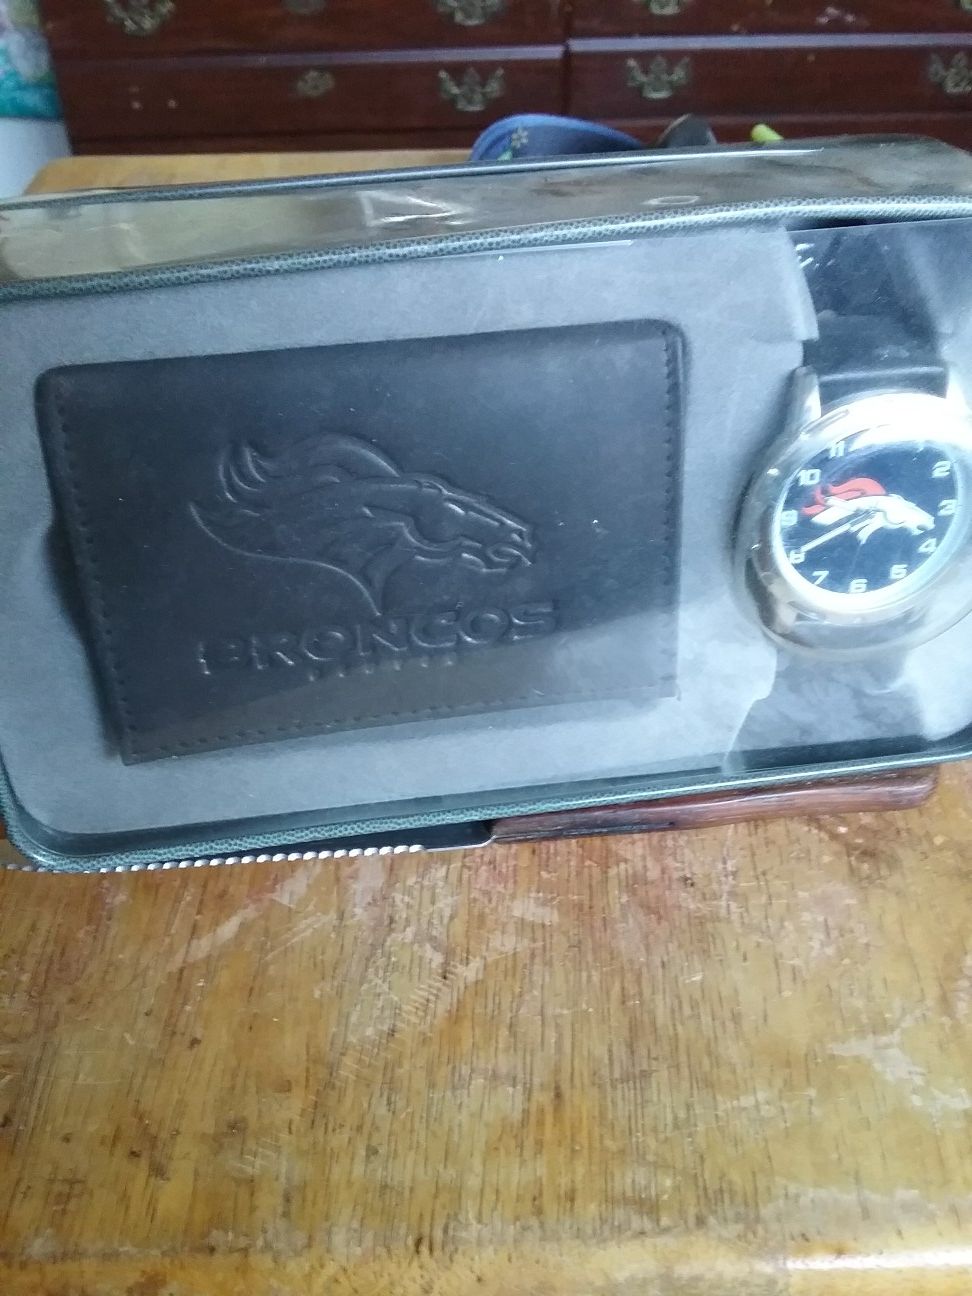 Denver Broncos gift set